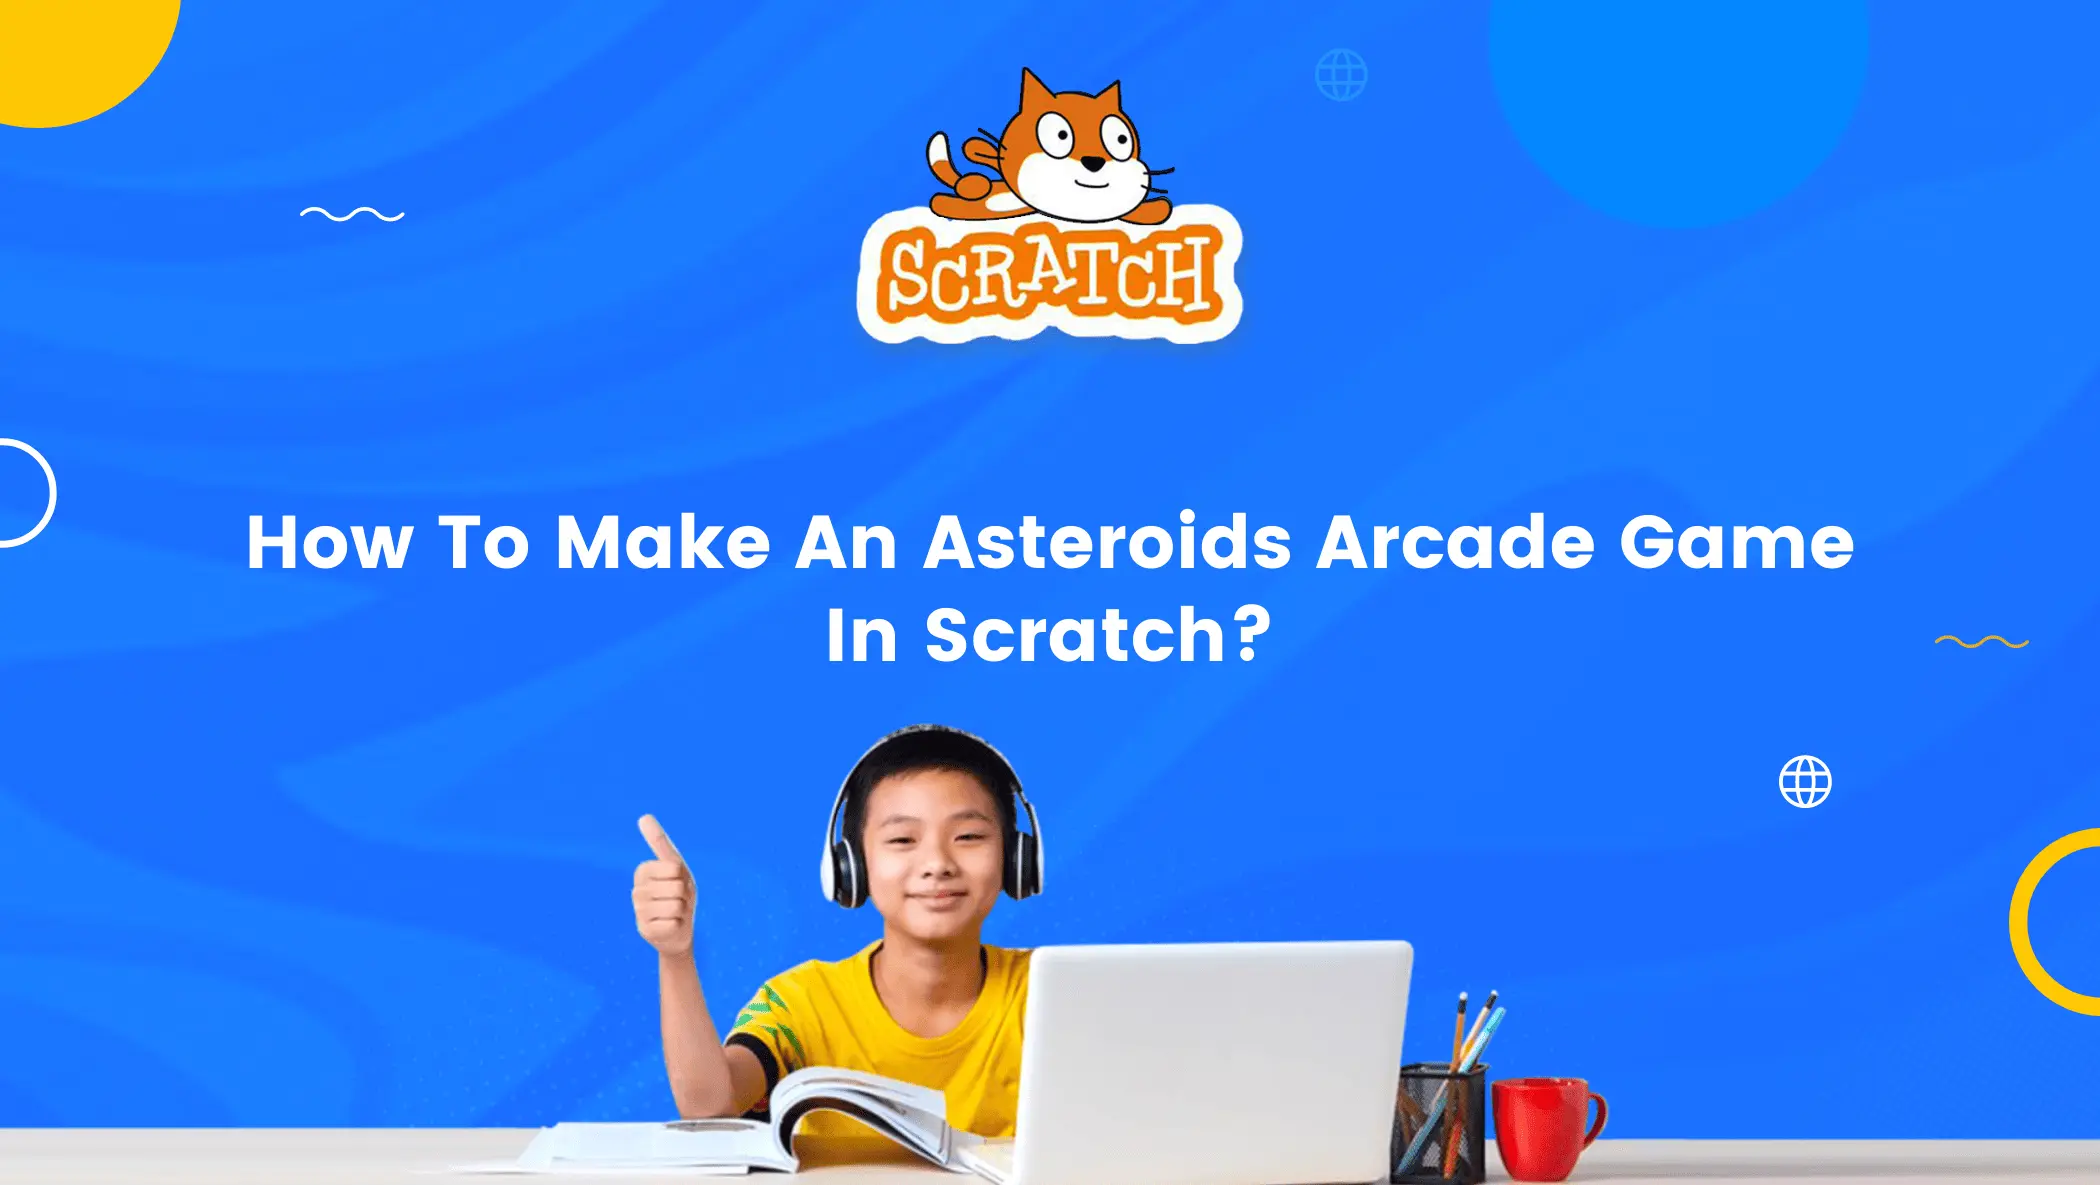 Сделать потрясающую астероидную аркадную игру в царапинах